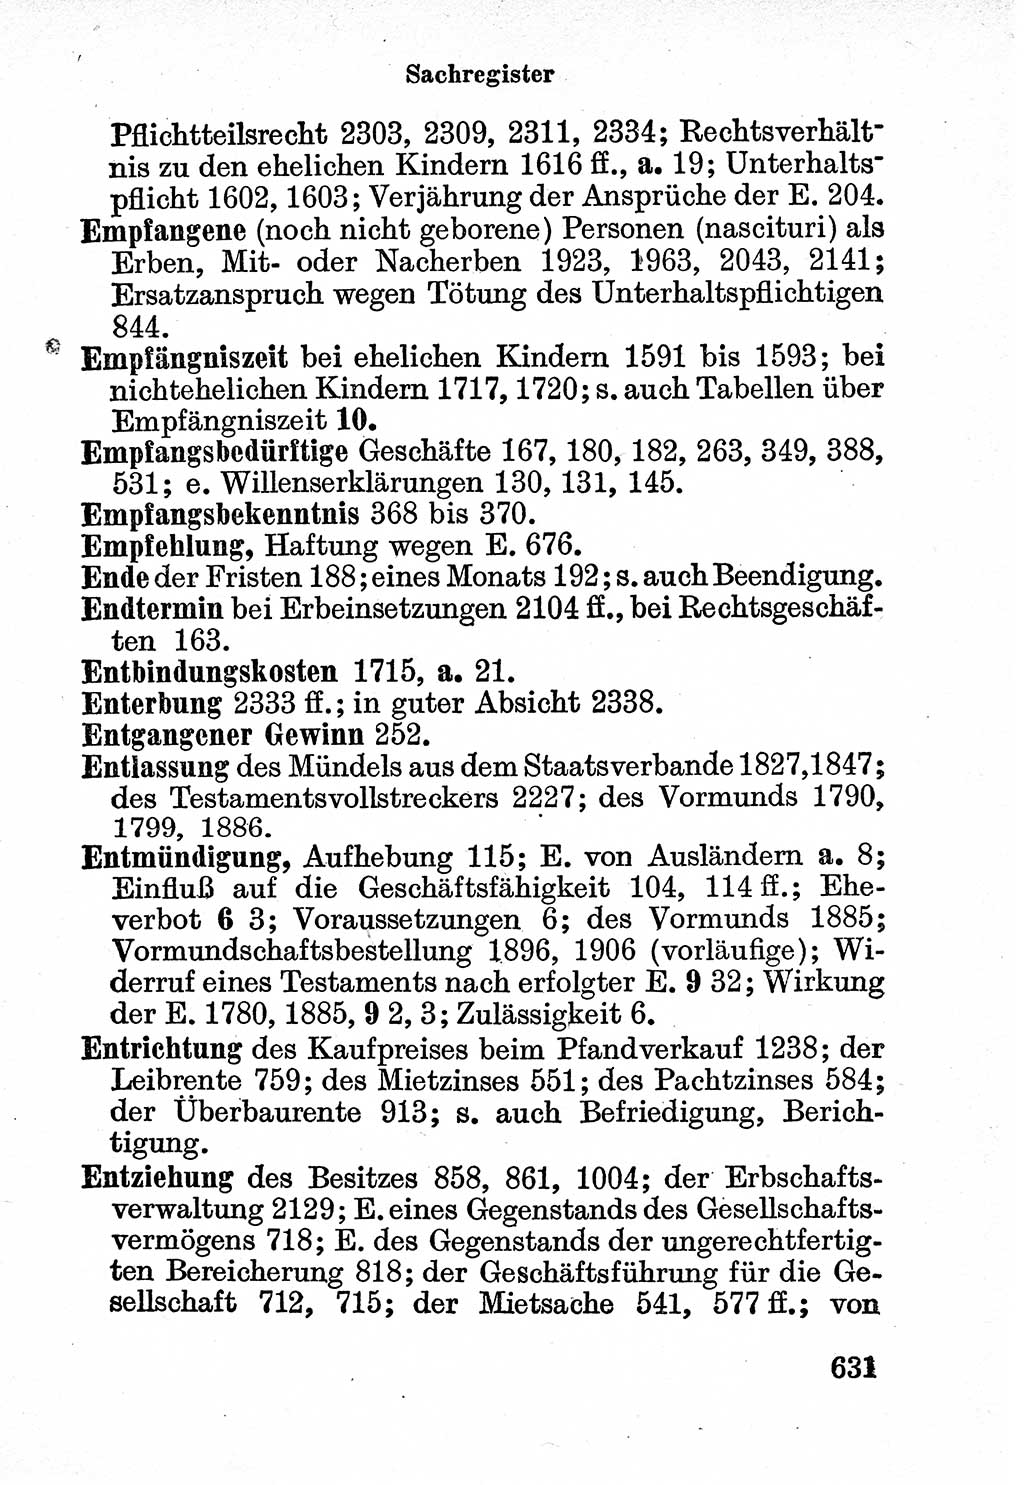 Bürgerliches Gesetzbuch (BGB) nebst wichtigen Nebengesetzen [Deutsche Demokratische Republik (DDR)] 1956, Seite 631 (BGB Nebenges. DDR 1956, S. 631)